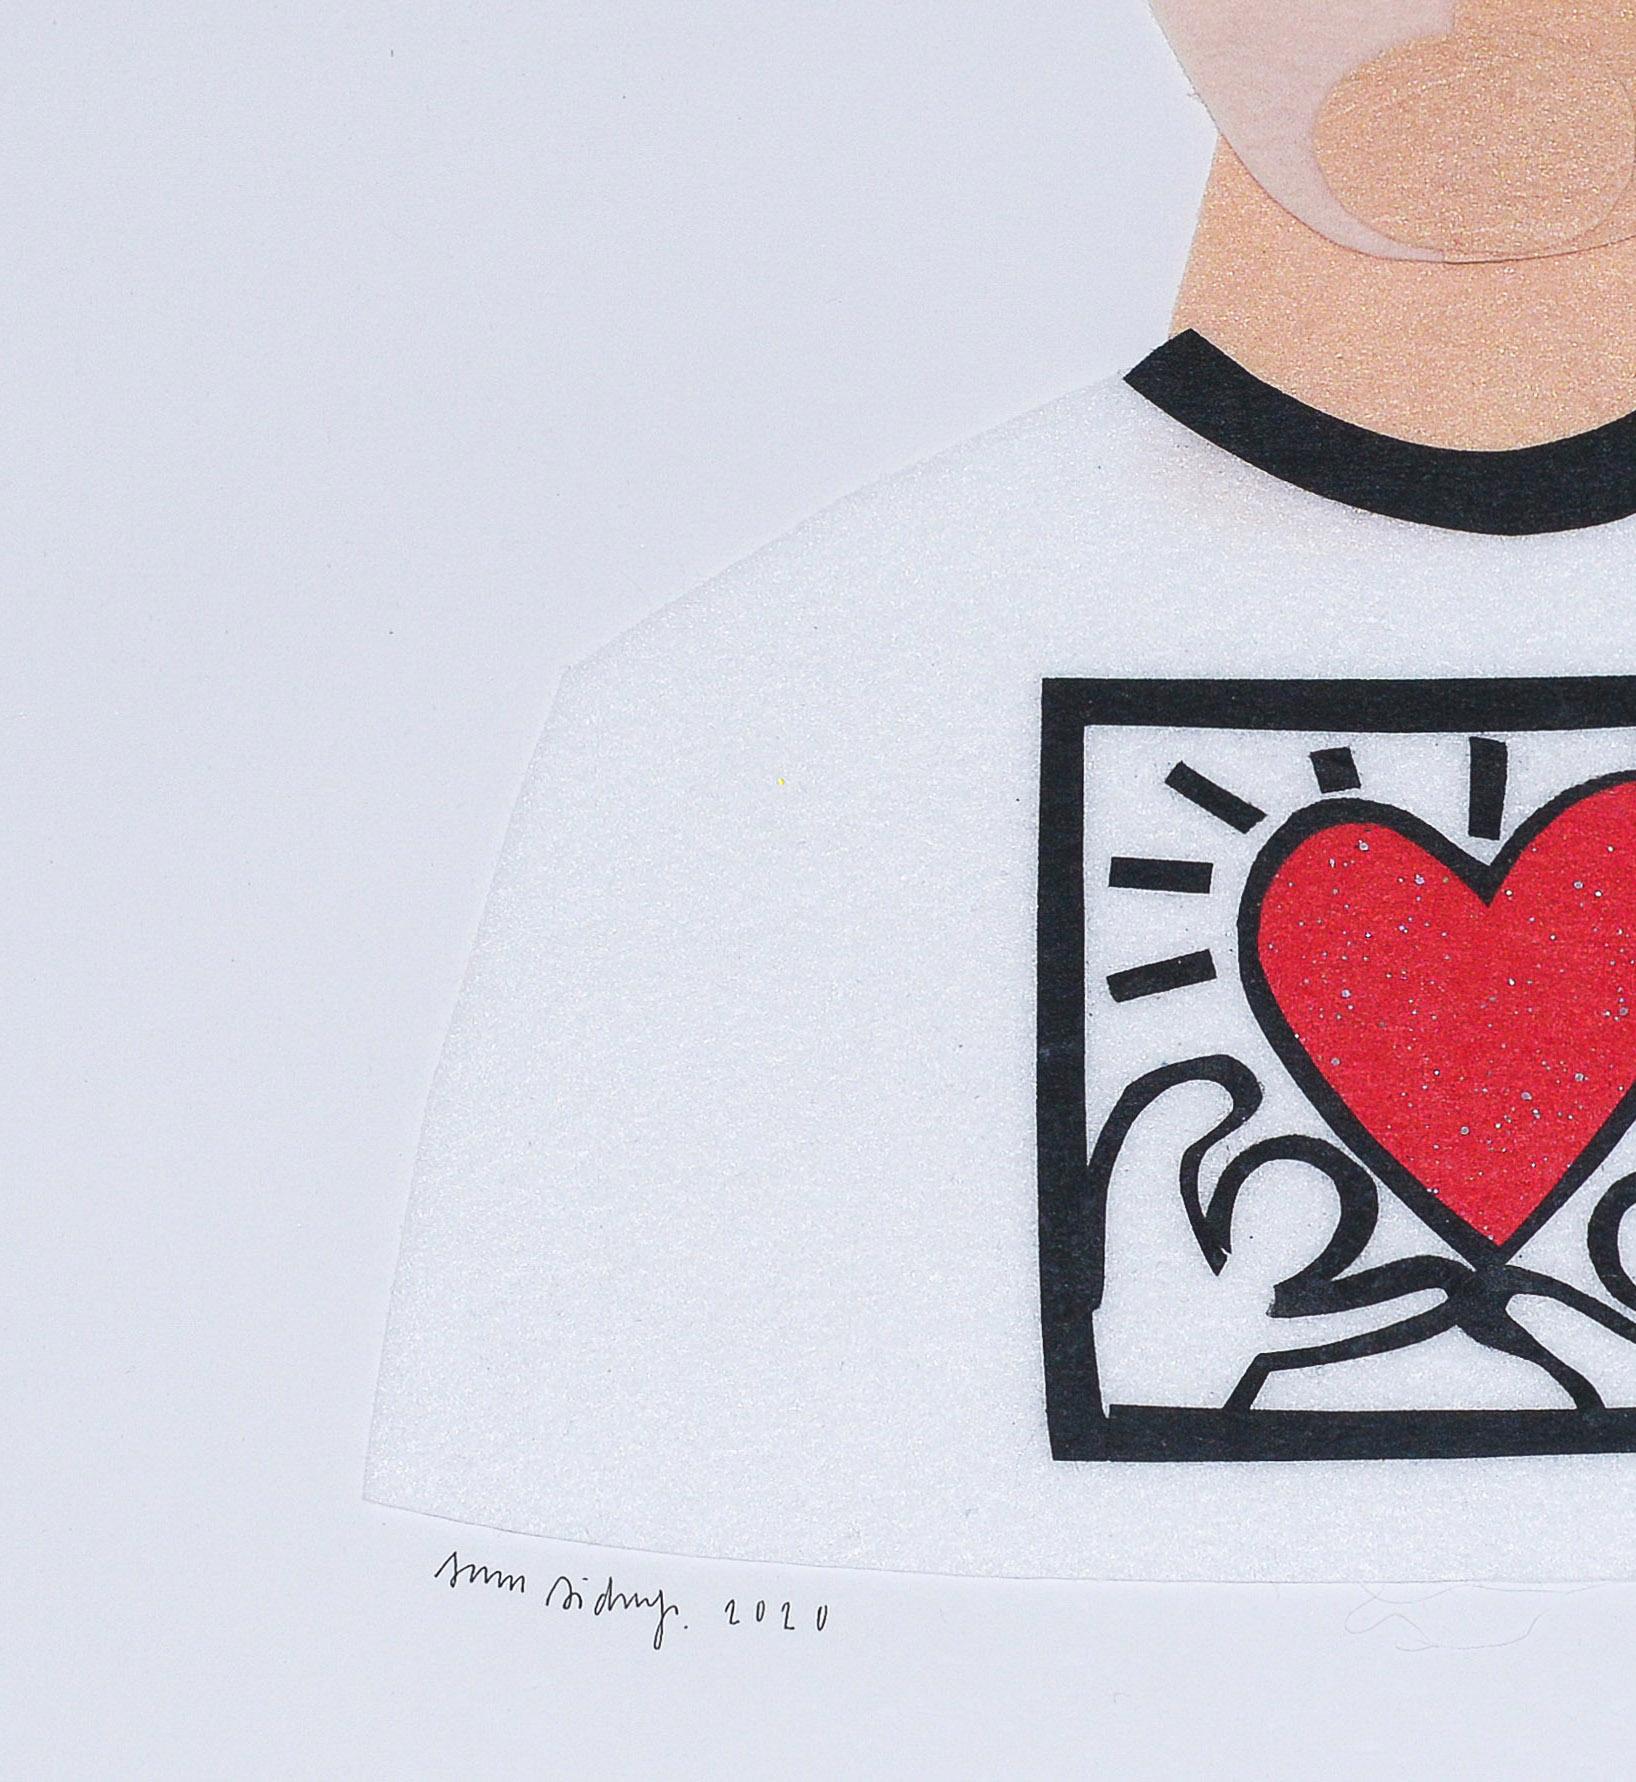 Original Sam Sidney-Filzcollage mit dem Bild von Keith Haring.  Die Filzcollage ist auf säurefreiem Karton in einem weiß gestrichenen Schattenboxrahmen montiert. Unterzeichnet und datiert.

Zuvor ausgestellt bei Eerdmans New York für die